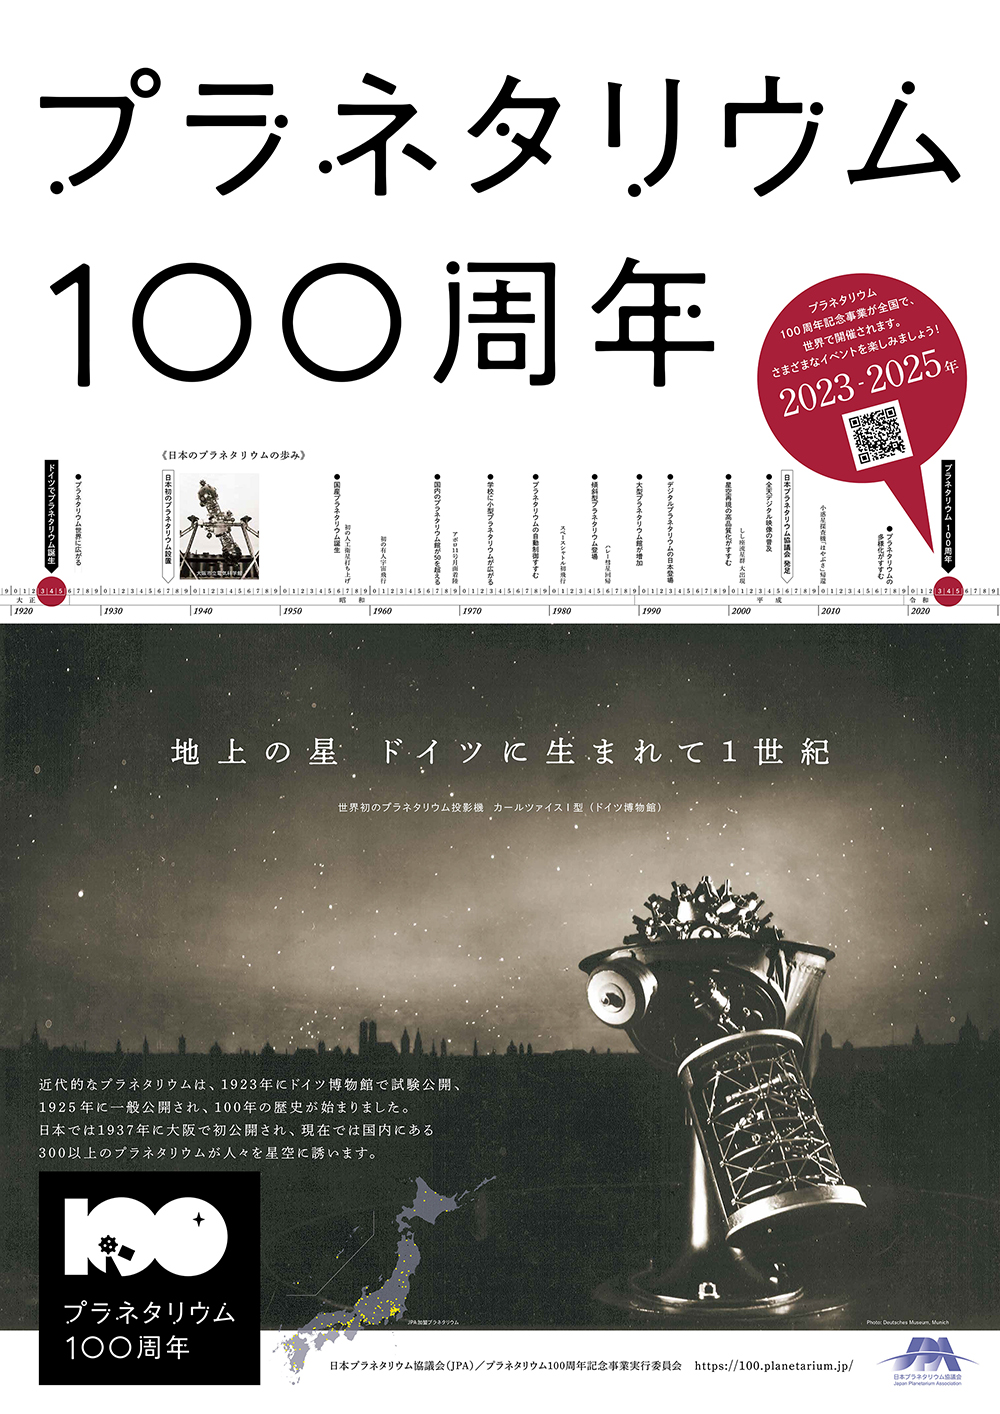 プラネタリウム100周年記念事業 #Planetarium100 on X: 